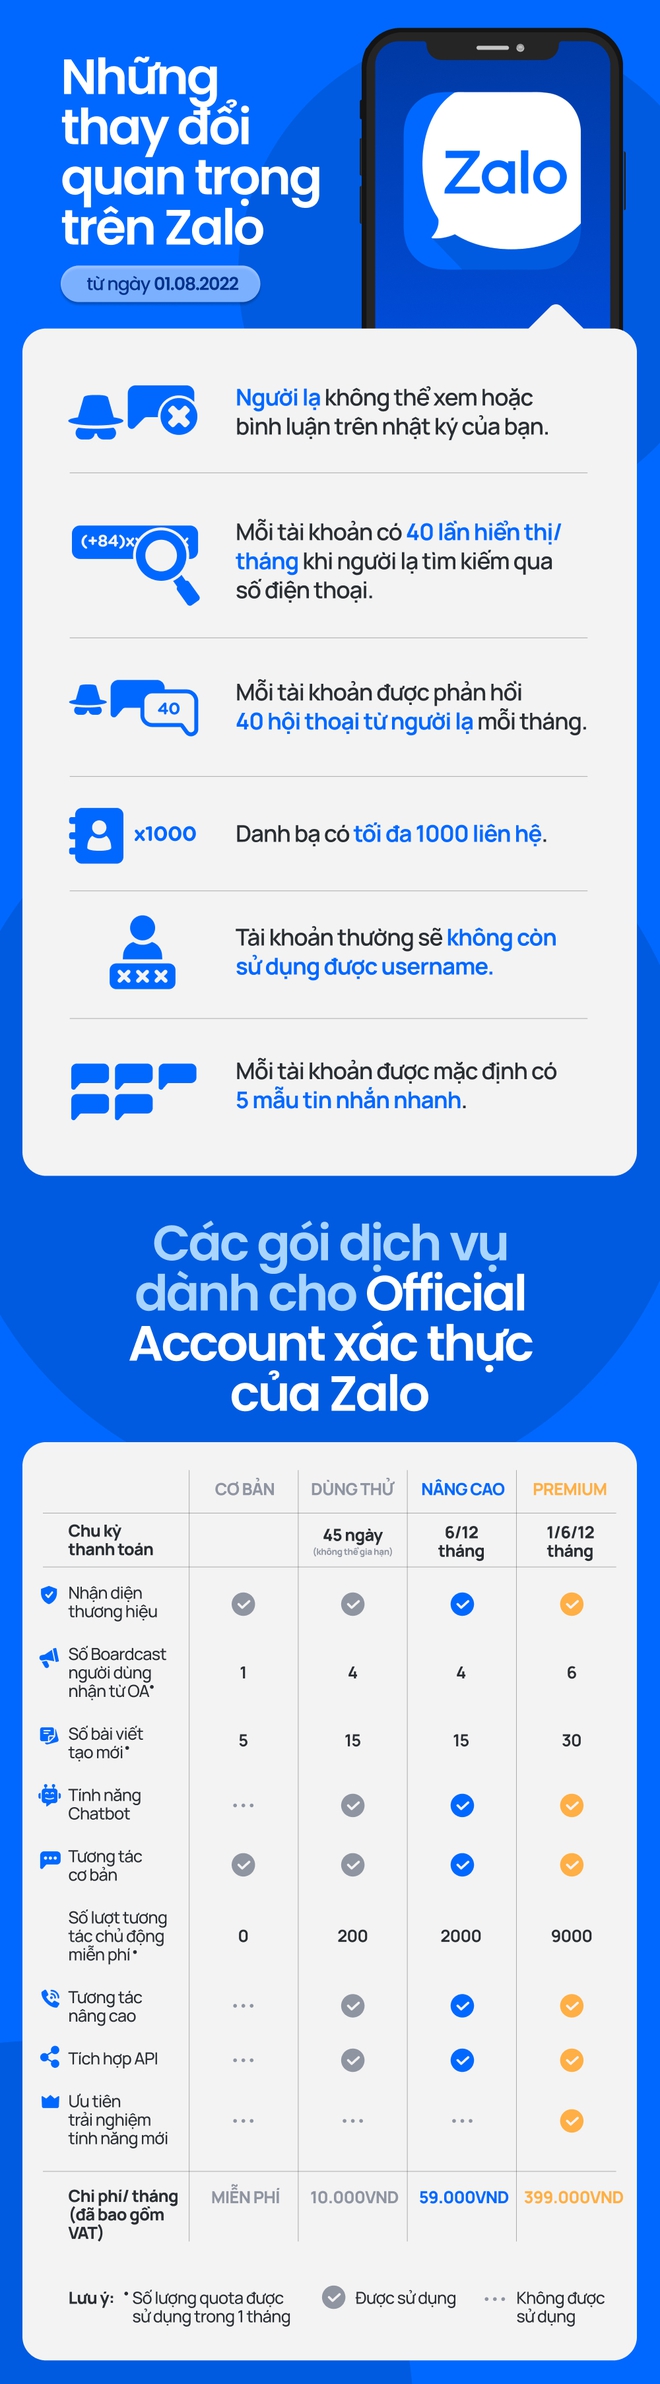 Infographic: Zalo thu phí người dùng, tài khoản miễn phí và trả tiền khác nhau như thế nào? - Ảnh 2.